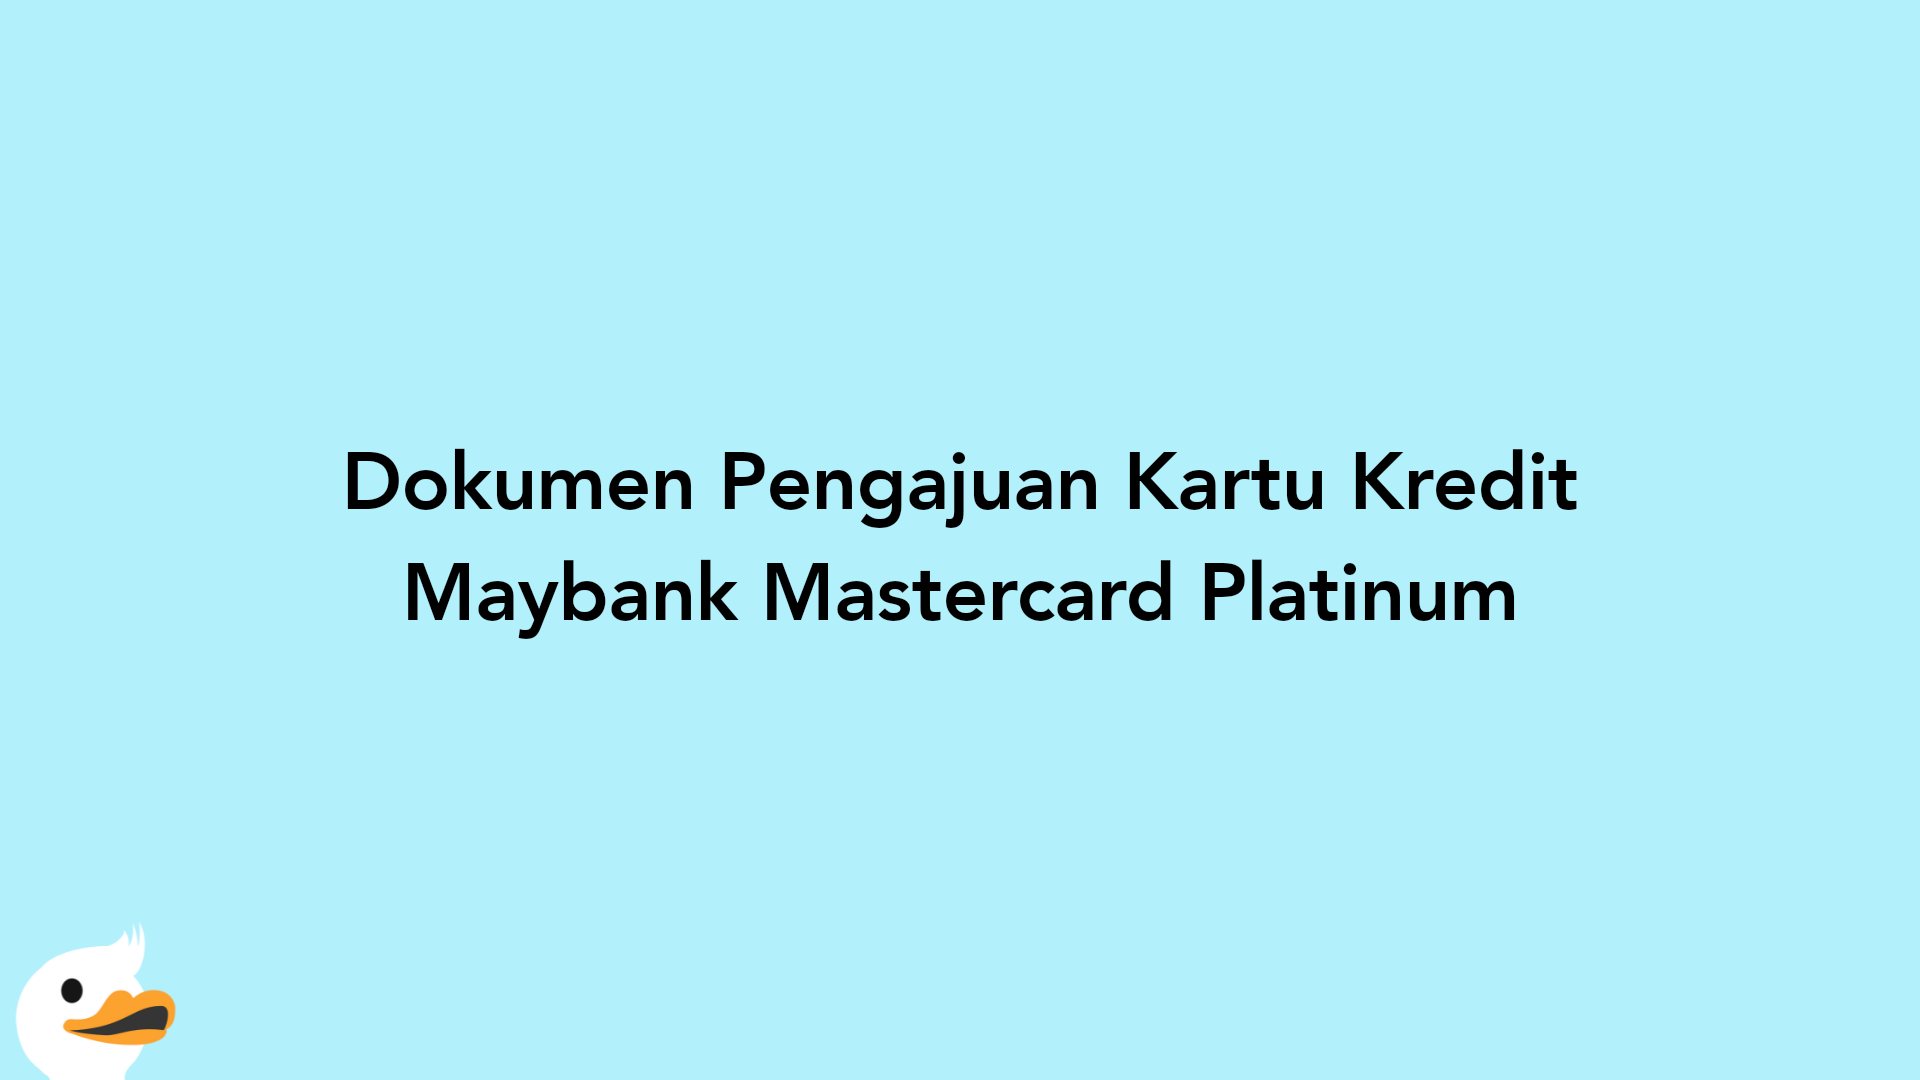 Dokumen Pengajuan Kartu Kredit Maybank Mastercard Platinum